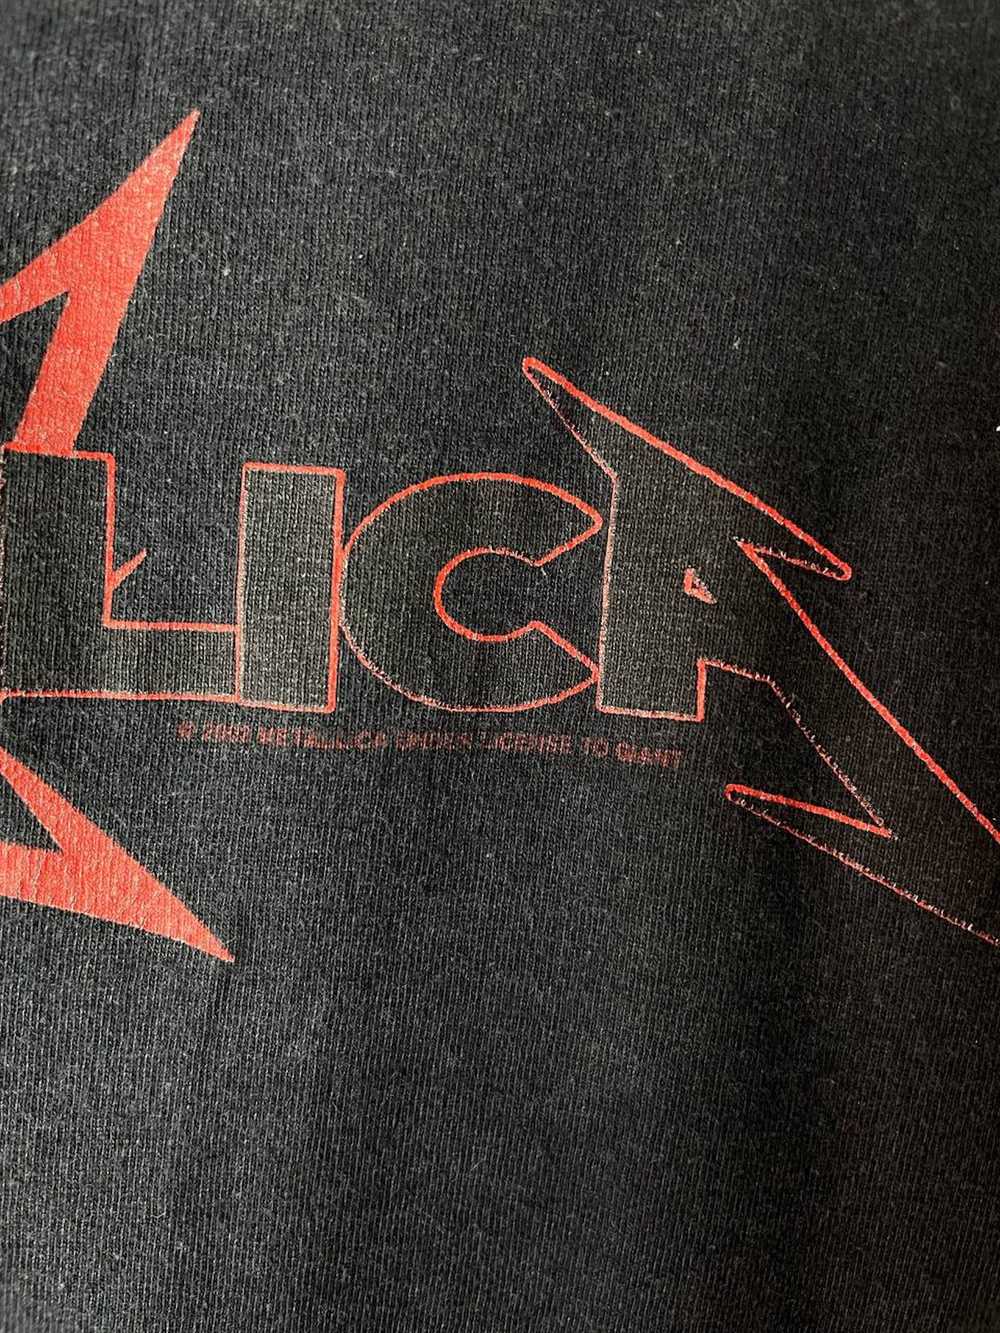 Metallica × Vintage Metallica Ninja 2002 vintage … - image 4